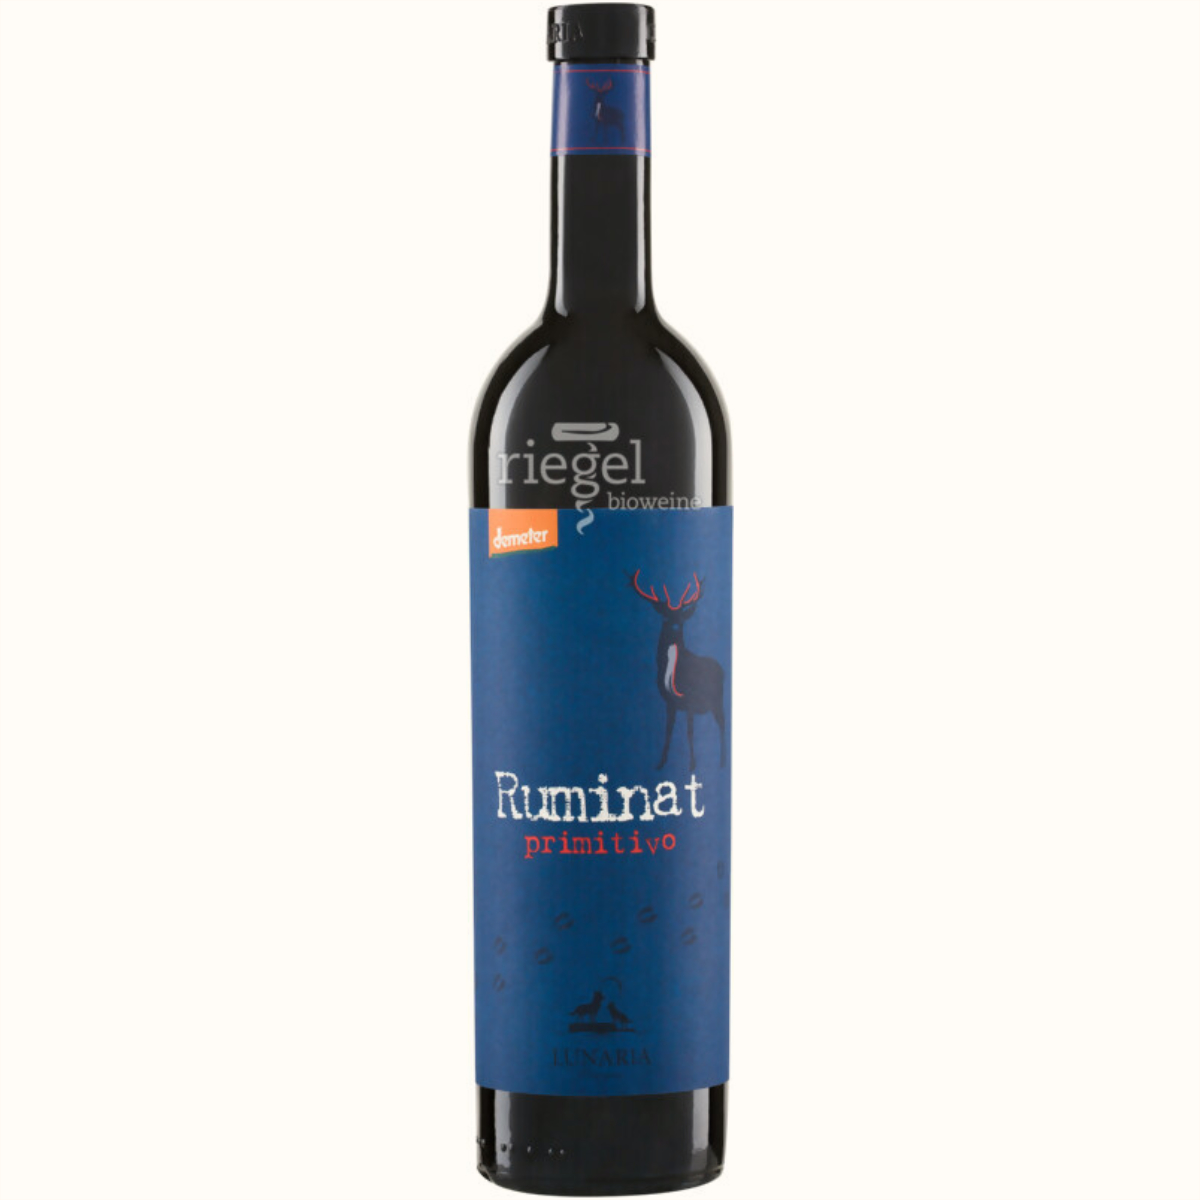 Ruminat Primitivo, Biowein, Riegel Biowein, Wein kaufen